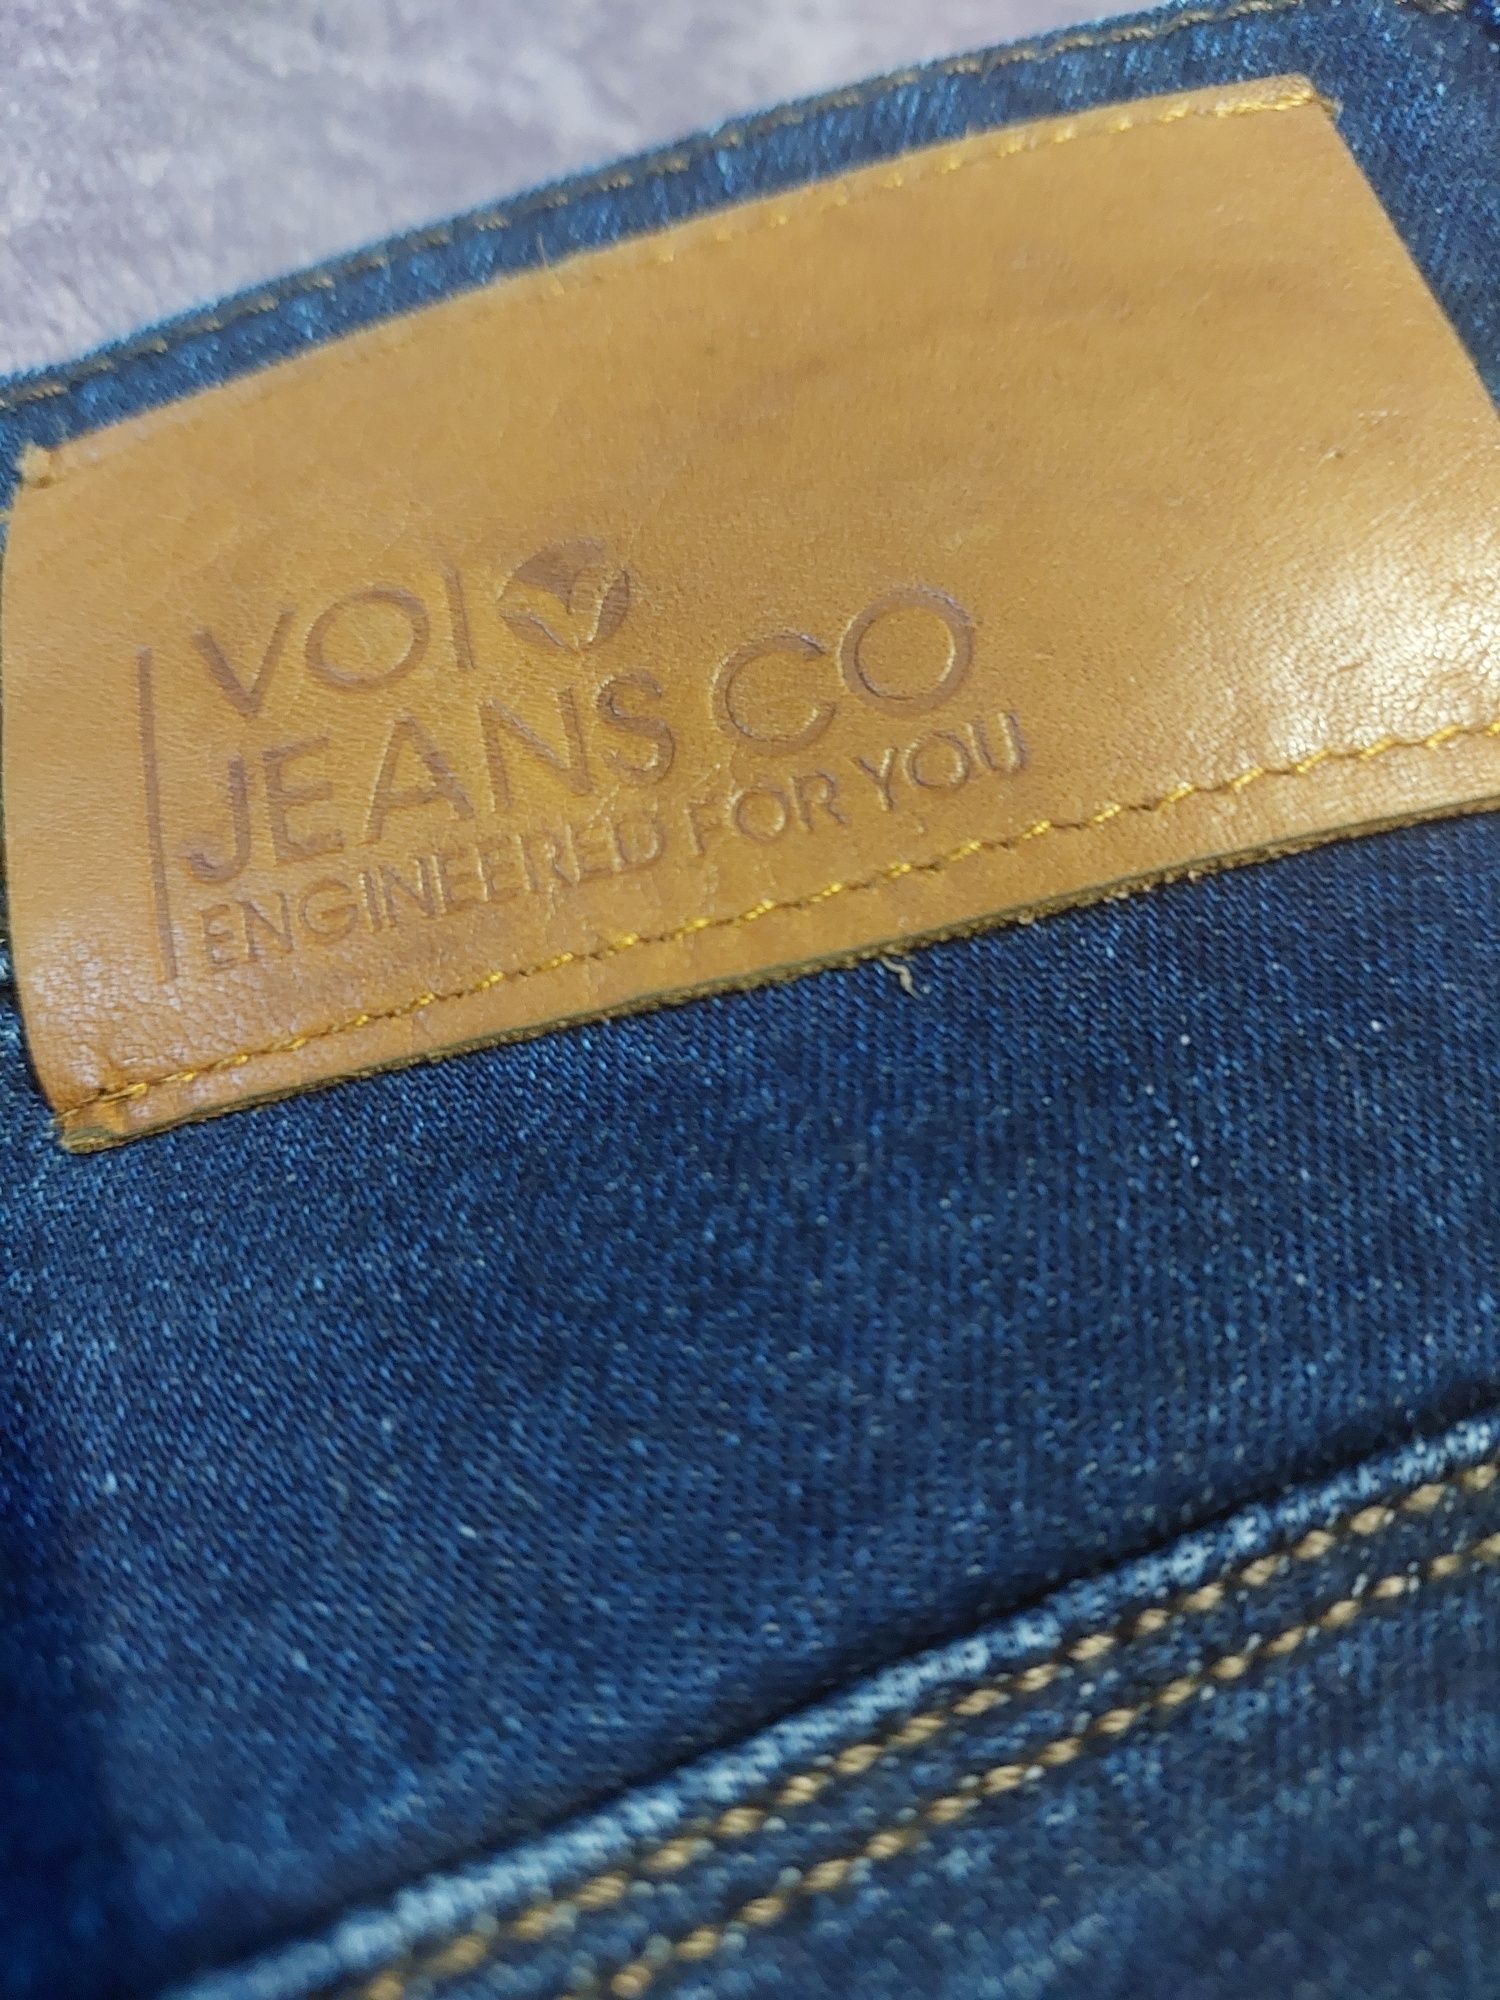 Чоловічі джинси фірми voi jeans co, розмір 33-34, L/XL 
ПБ 50
Вн крок